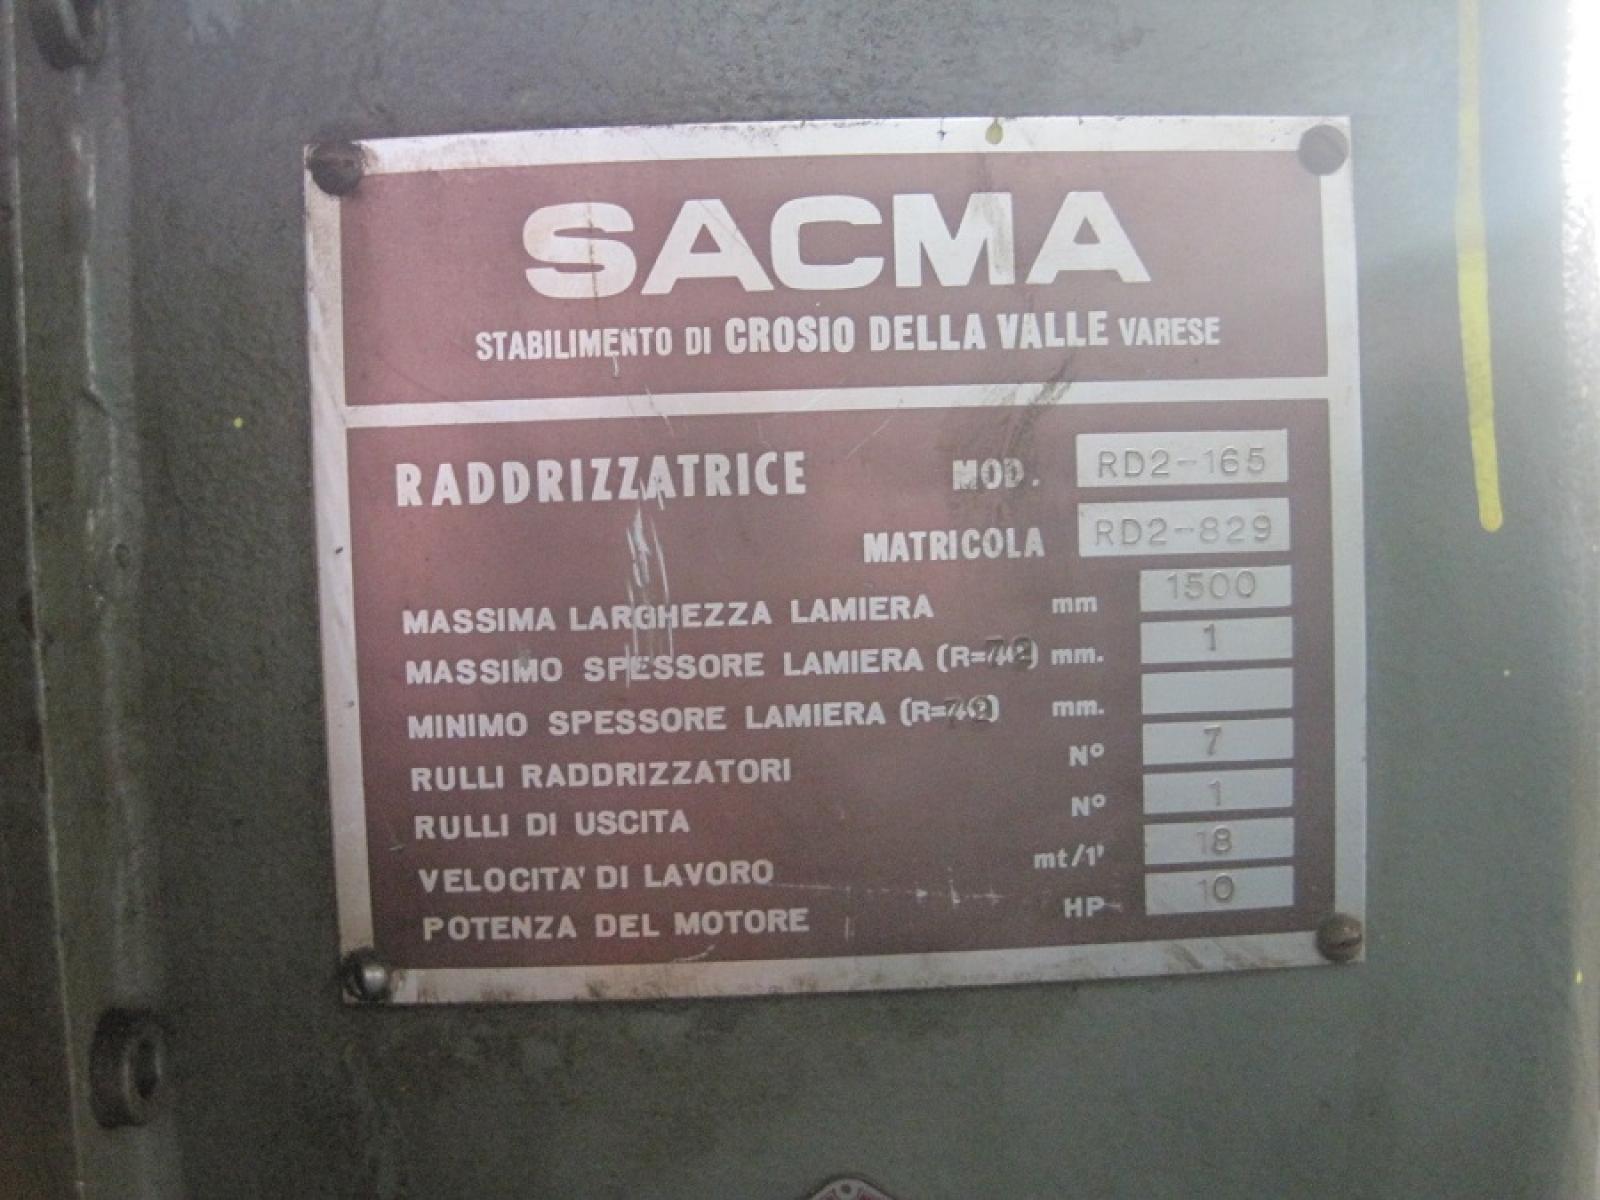 Raddrizzatrice Sacma 1500 x 1 mm